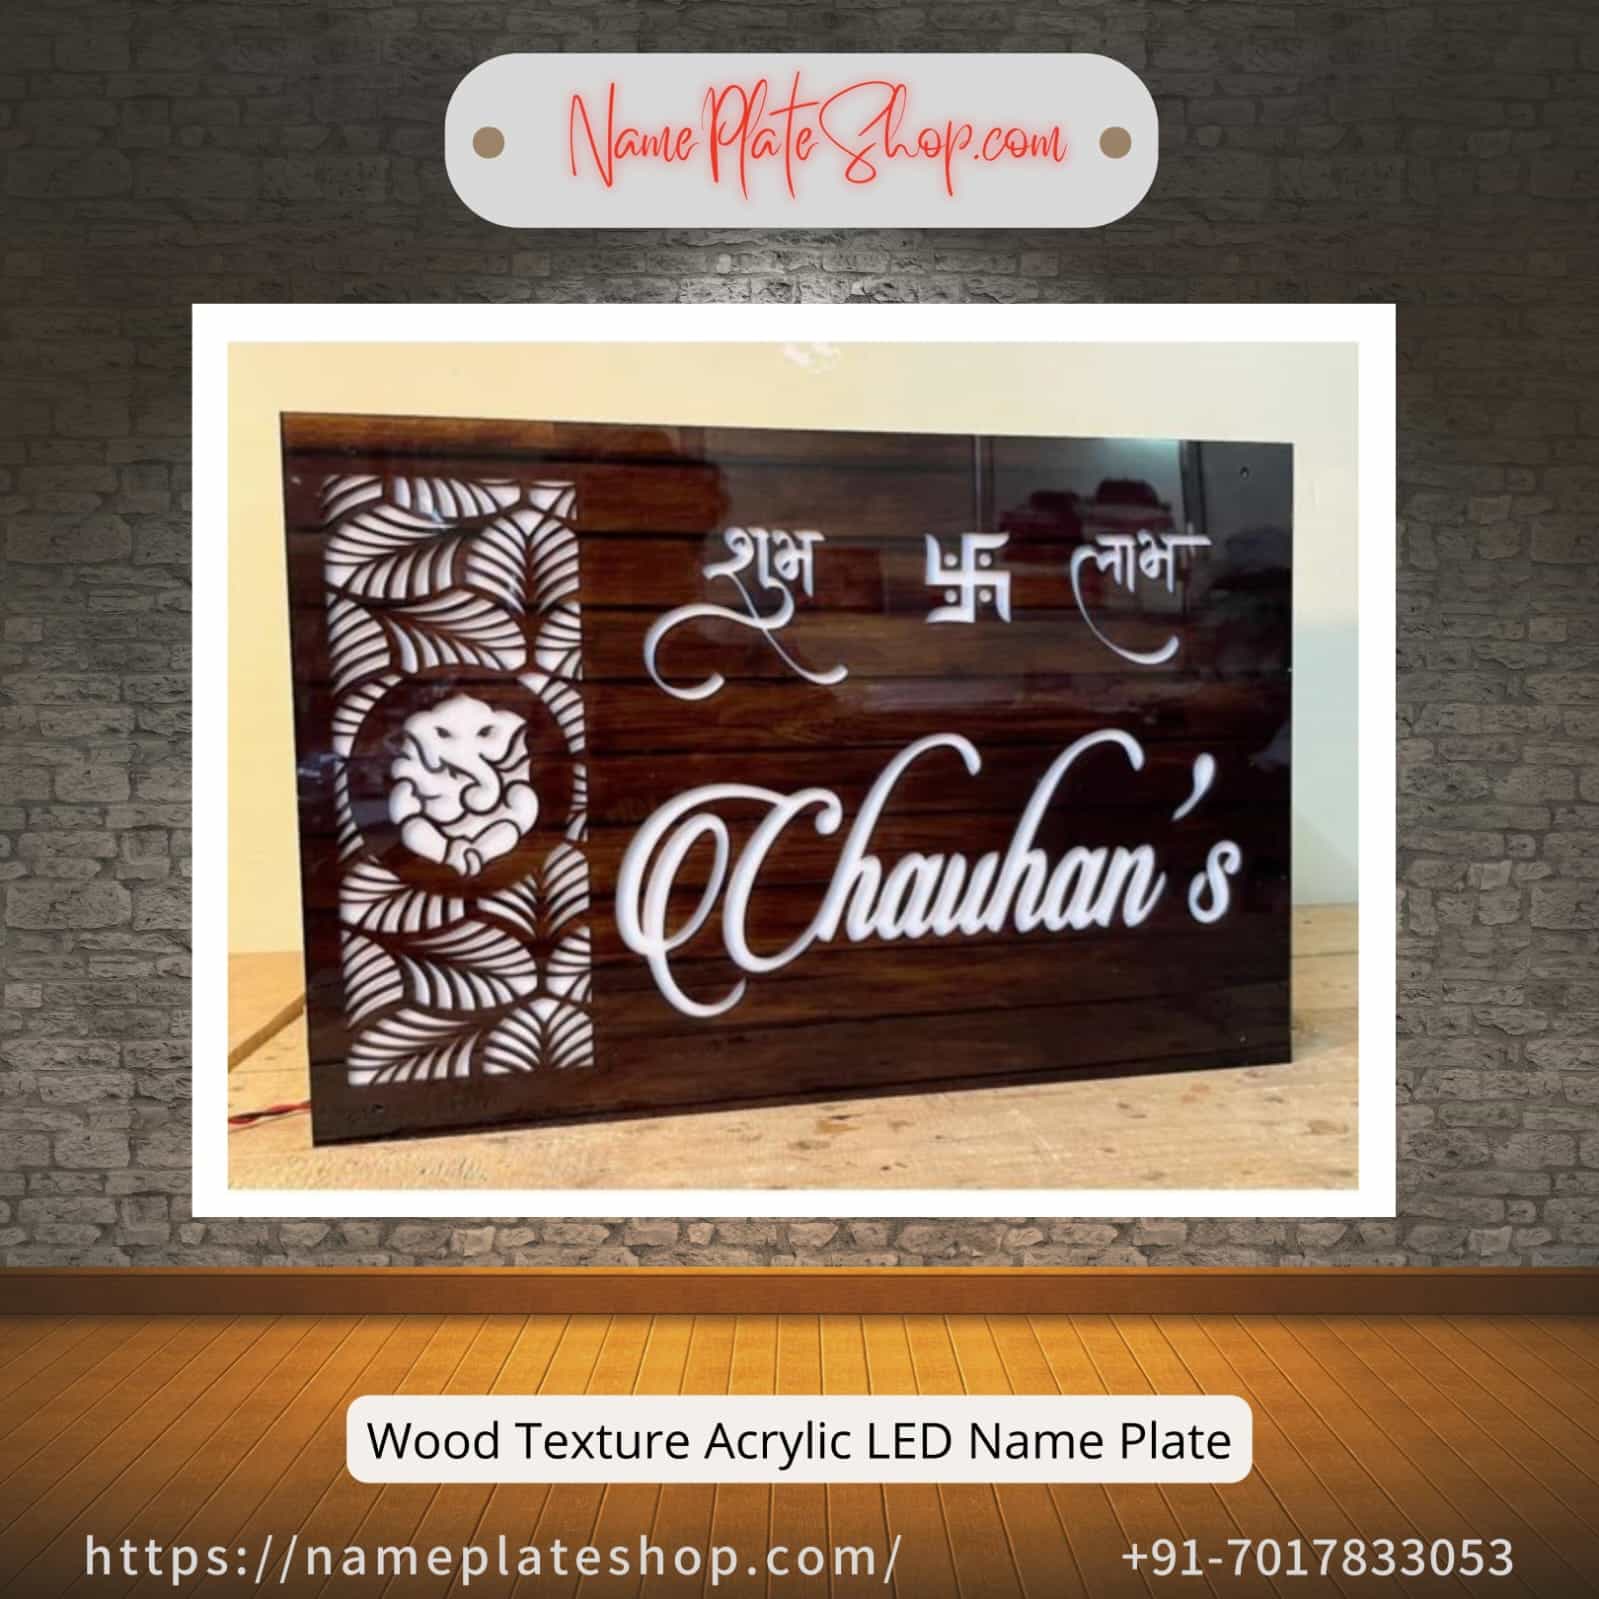 Selling Wood Texture Acrylic LED Name Plate On NamePlateShop